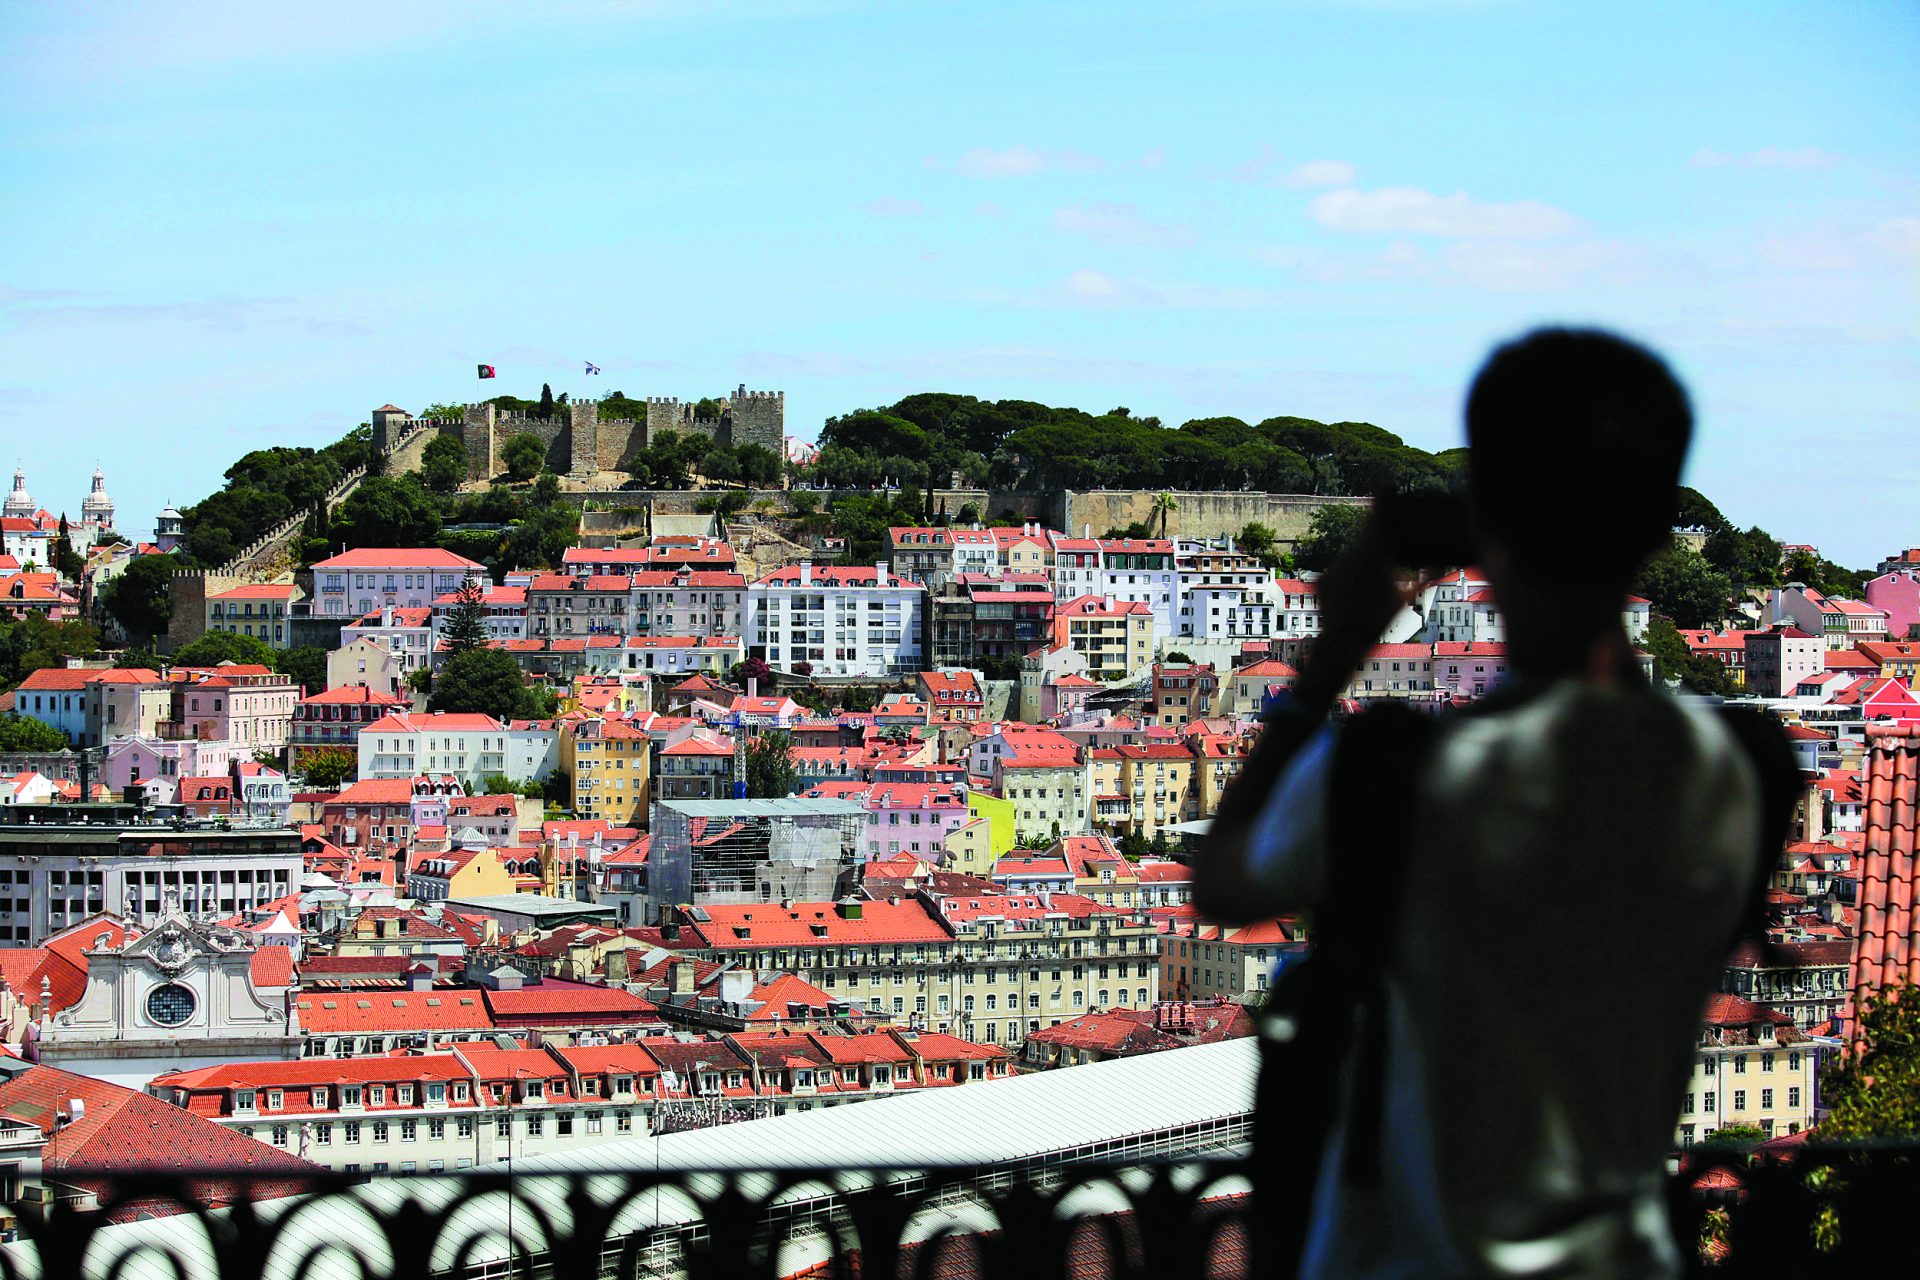 Preço das casas. Portugal regista uma das maiores subidas da Europa